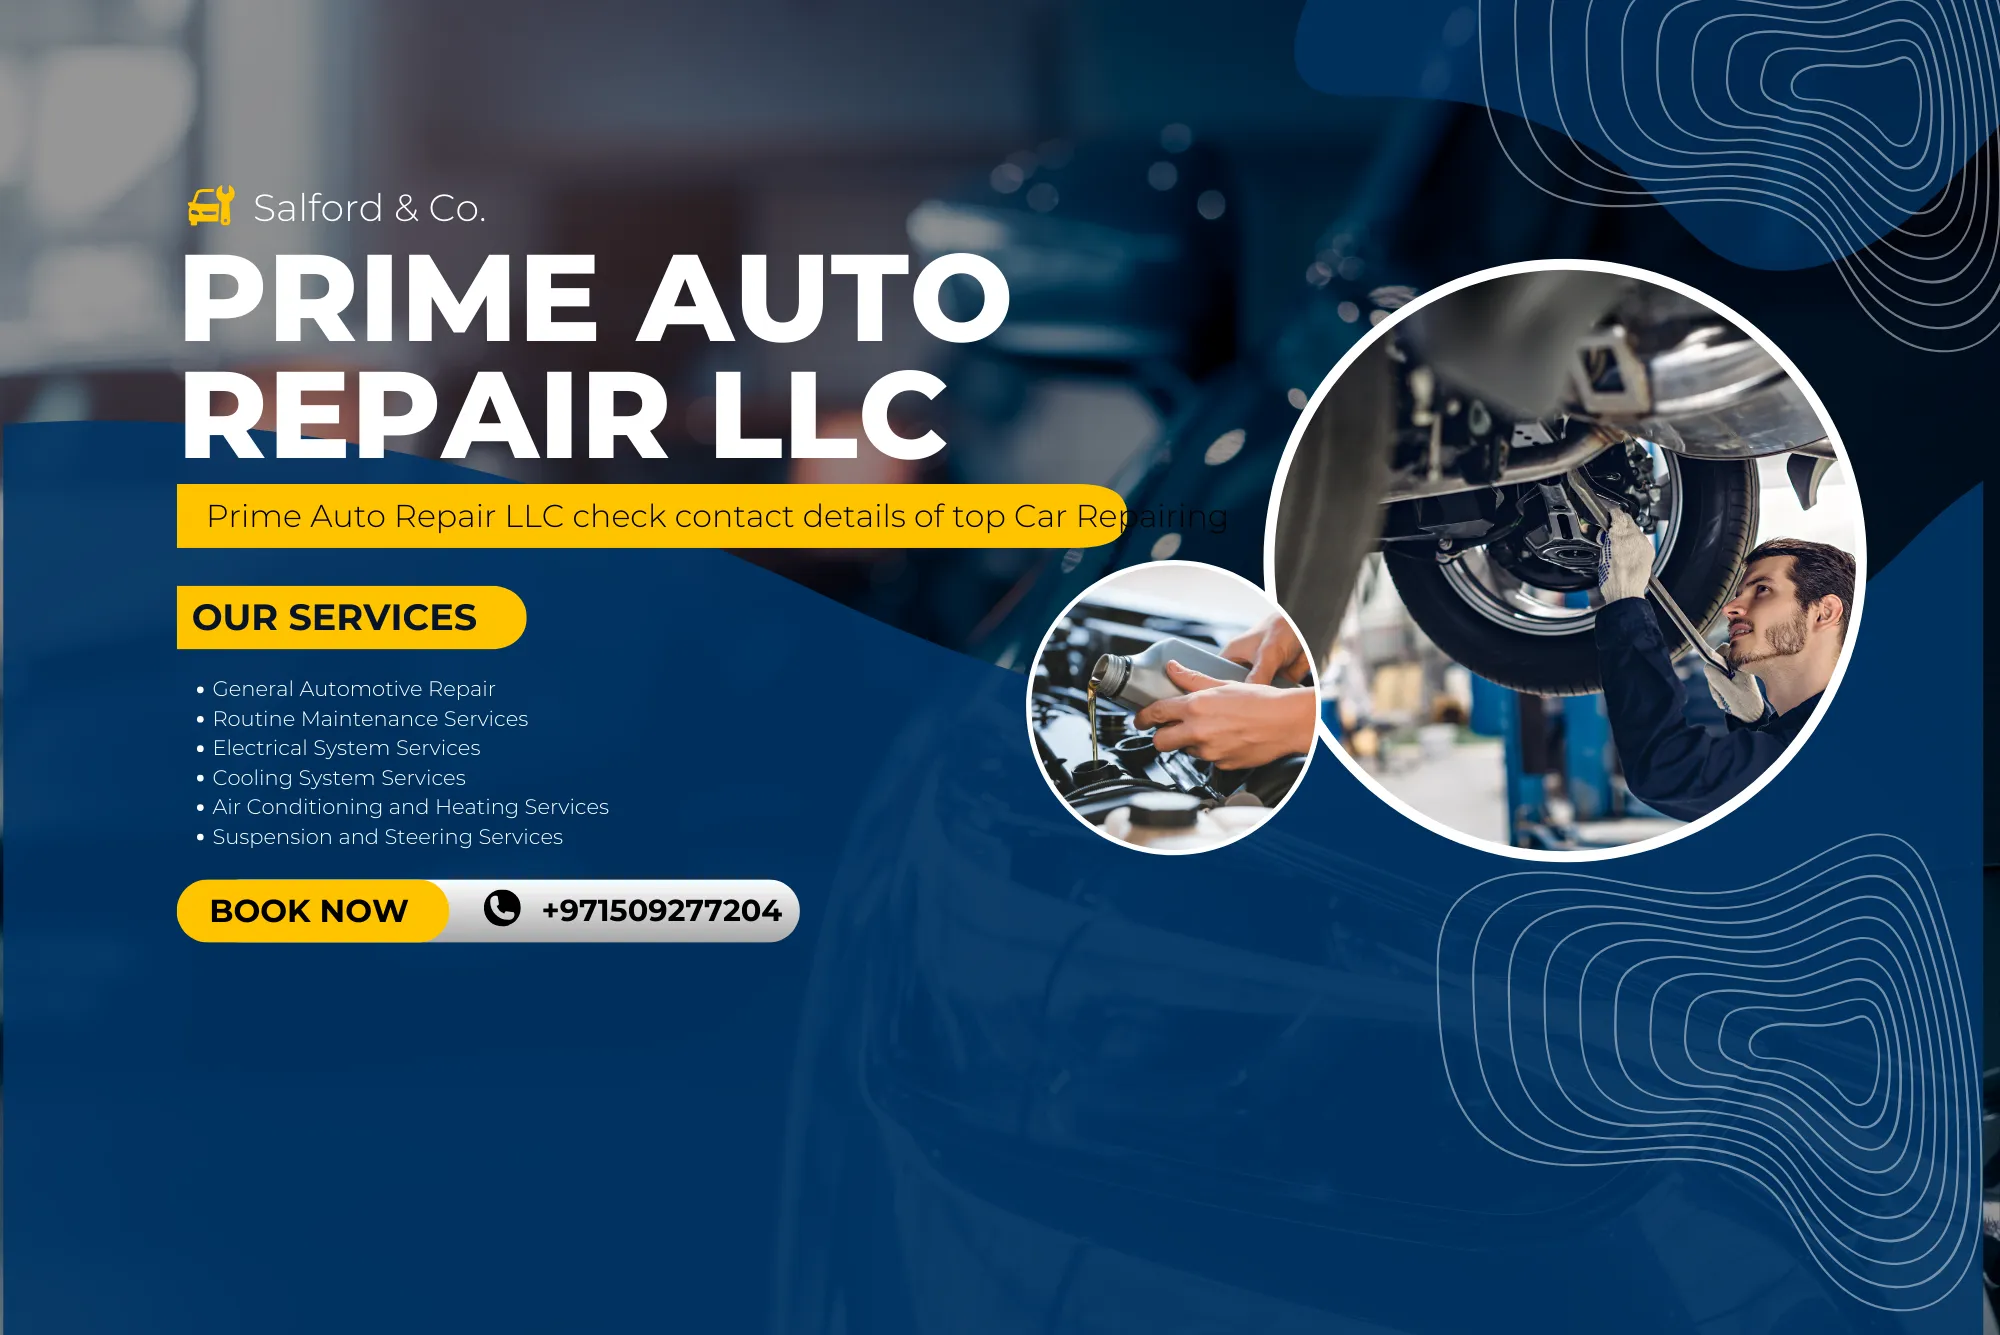 Prime Auto Repair LLC